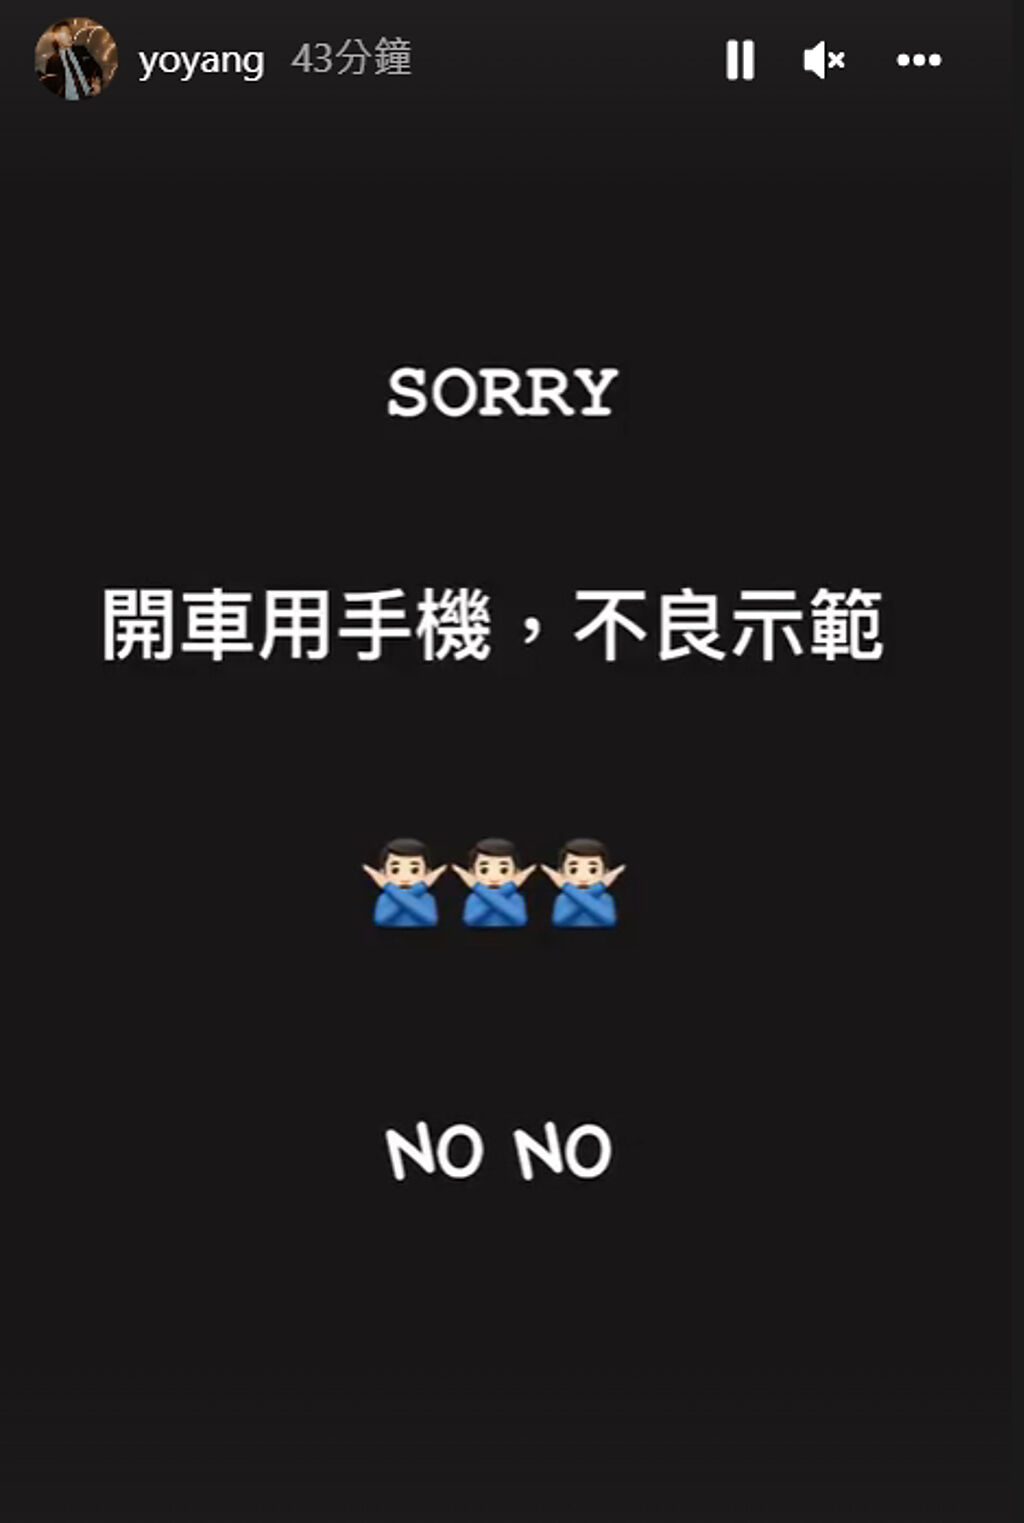 得知開車自拍影片惹議後，楊祐寧隨即發IG限動道歉。(翻攝自yoyang IG)